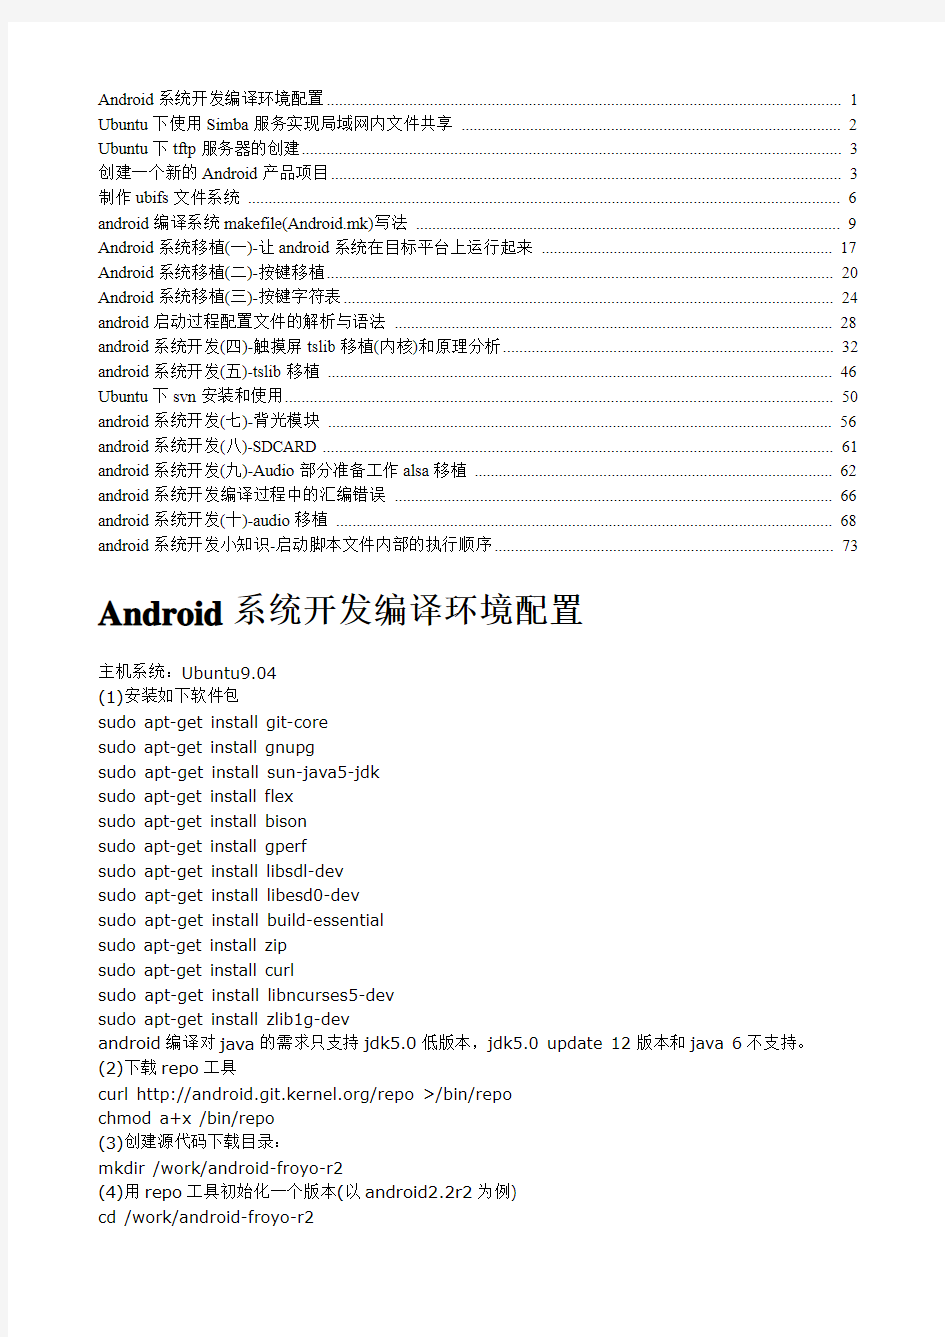 Android系统编译移植技术大全